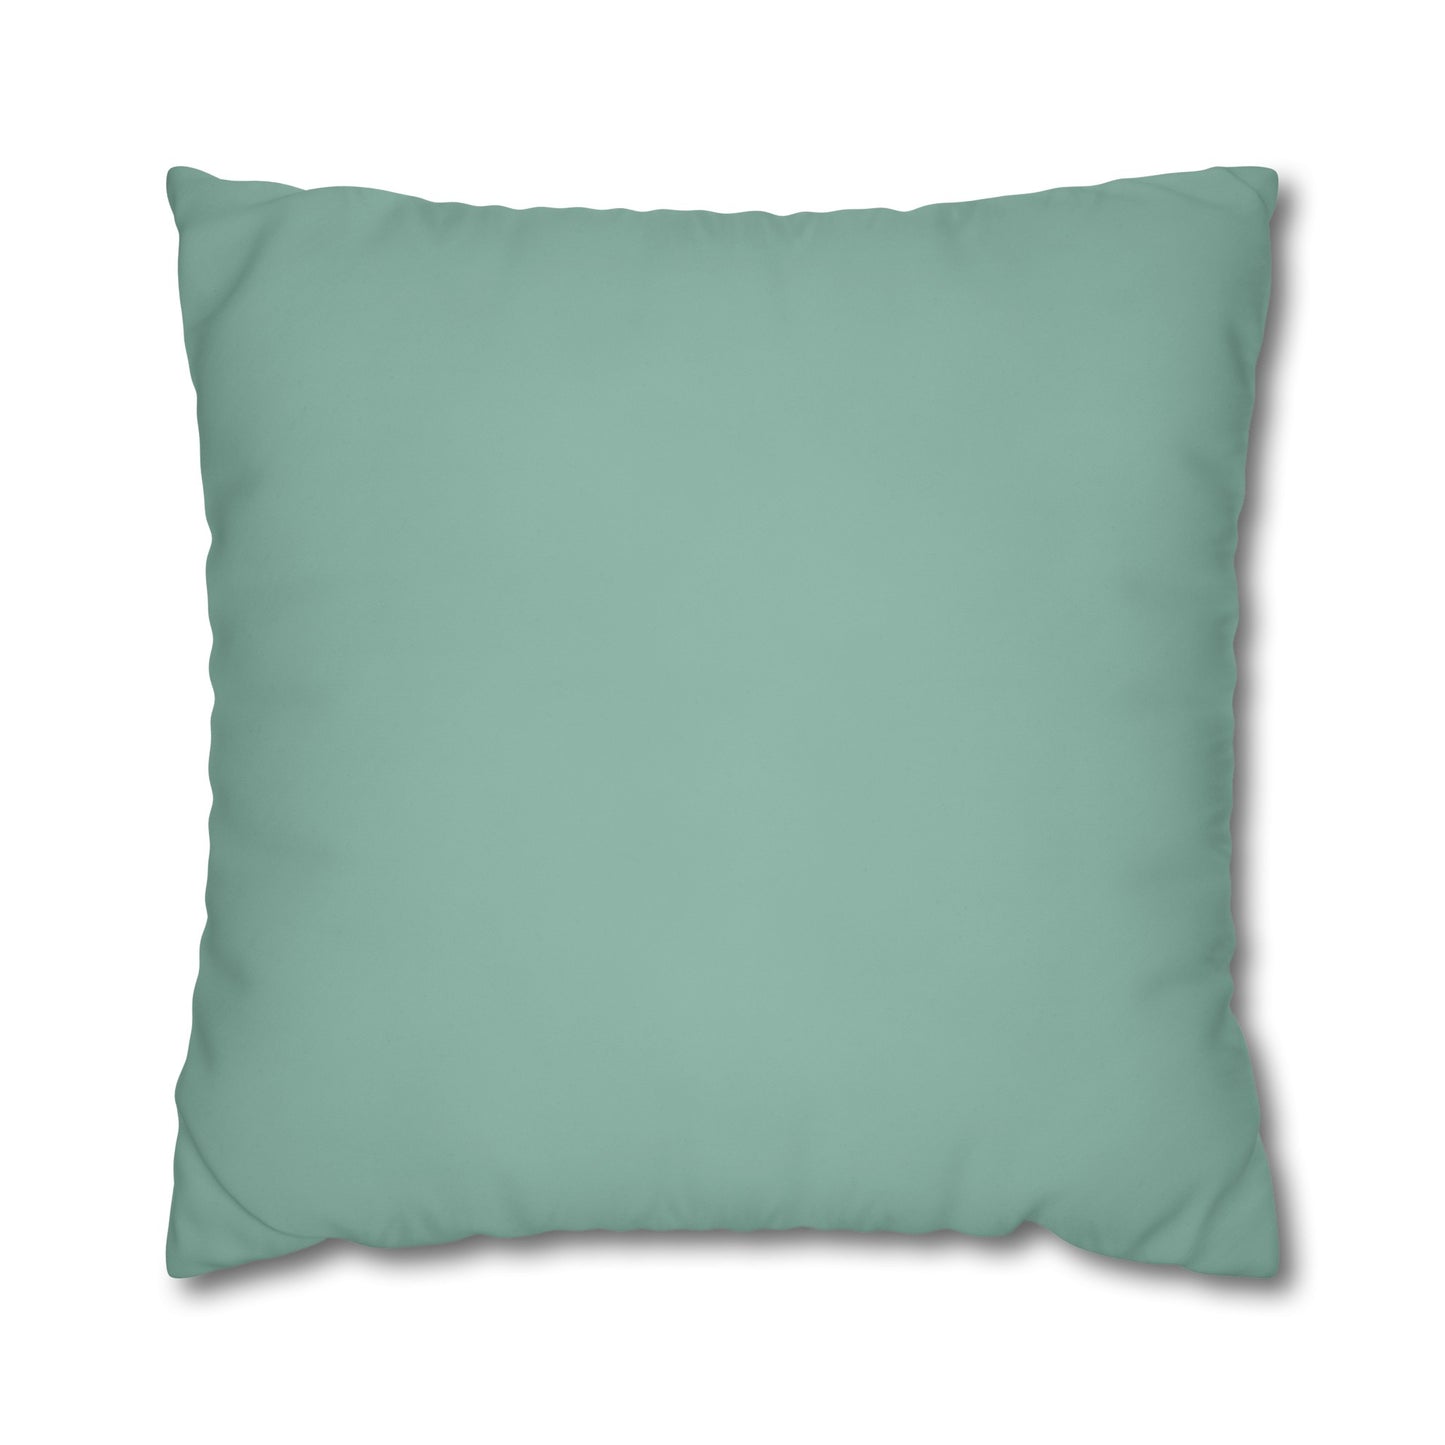 Spa Green Euro Pillow Cover